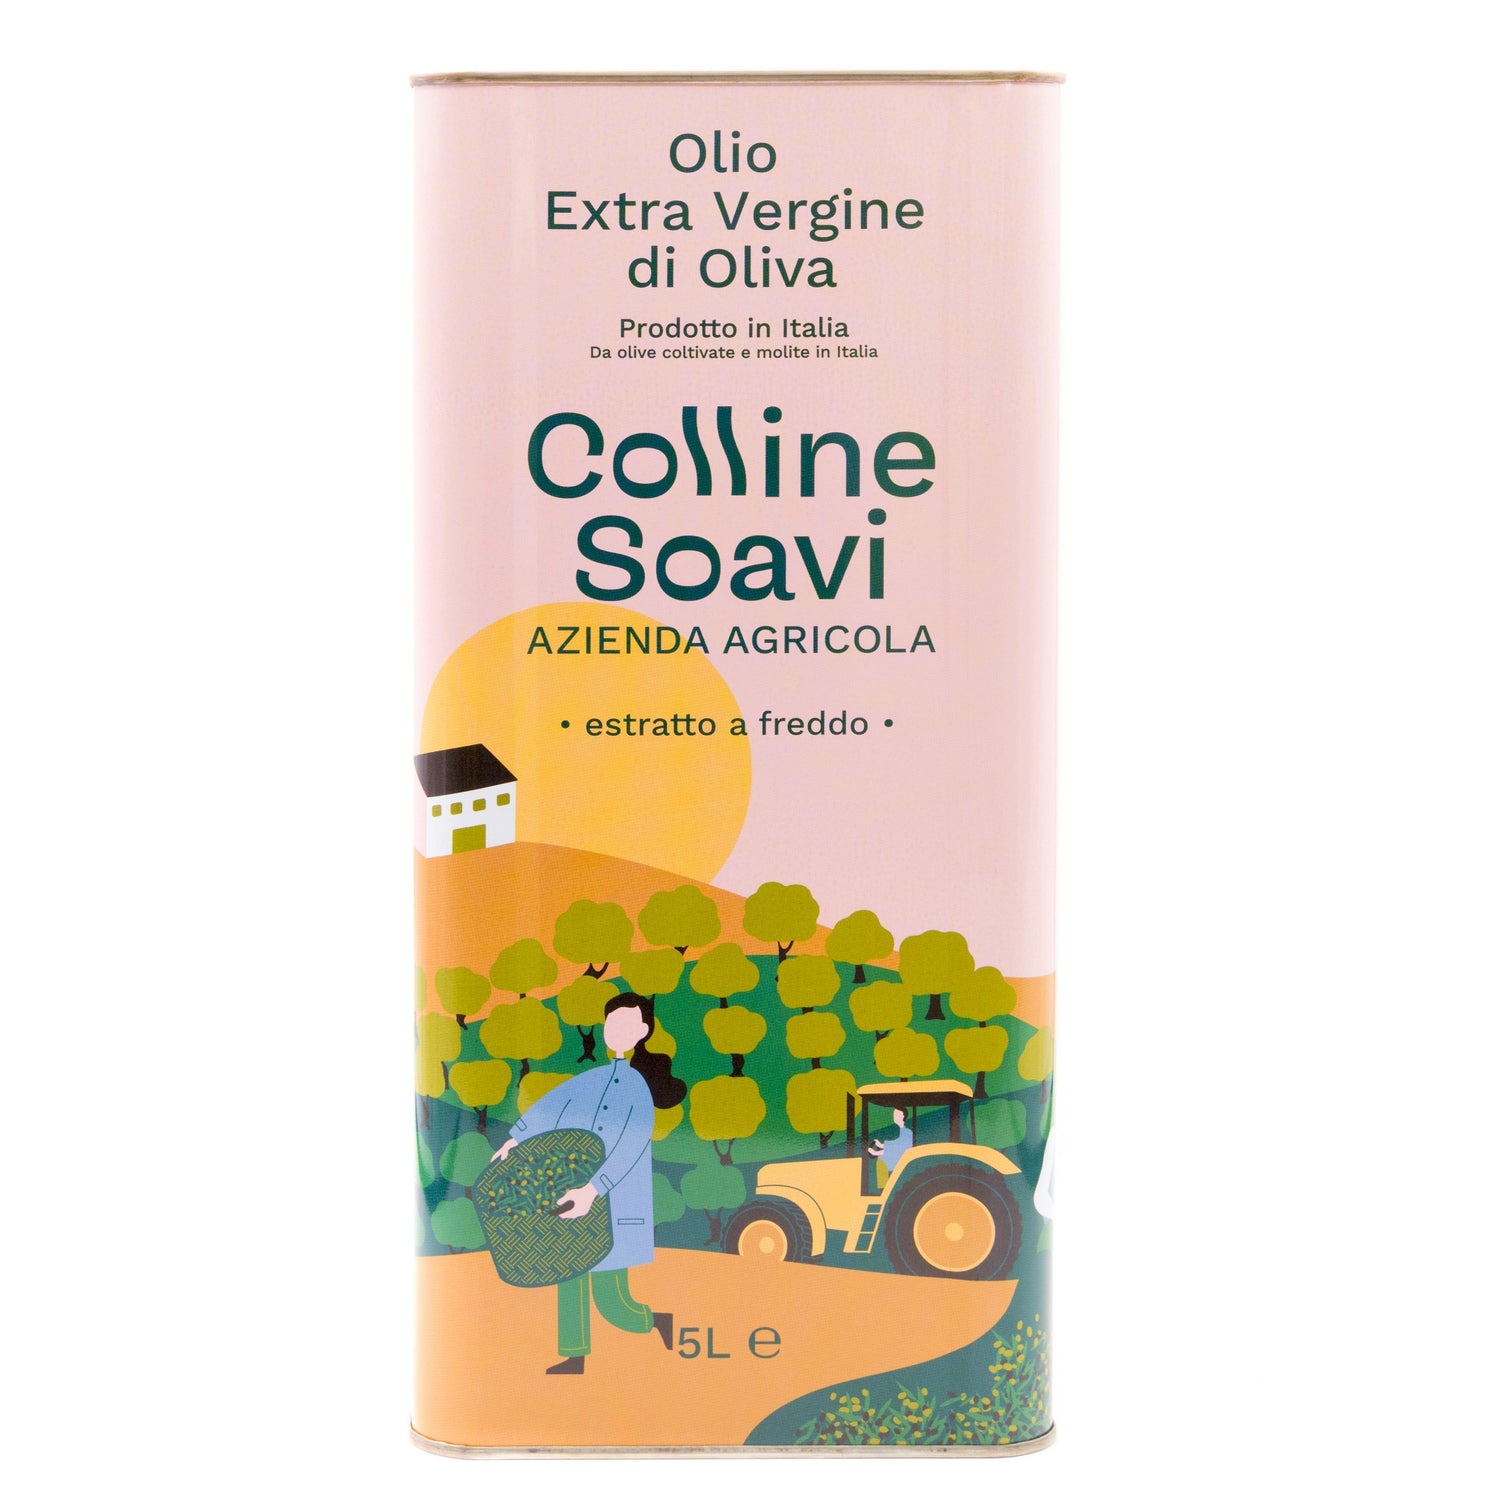 Olio Extravergine di Oliva Colline Soavi, Latta 5L - 2022/2023